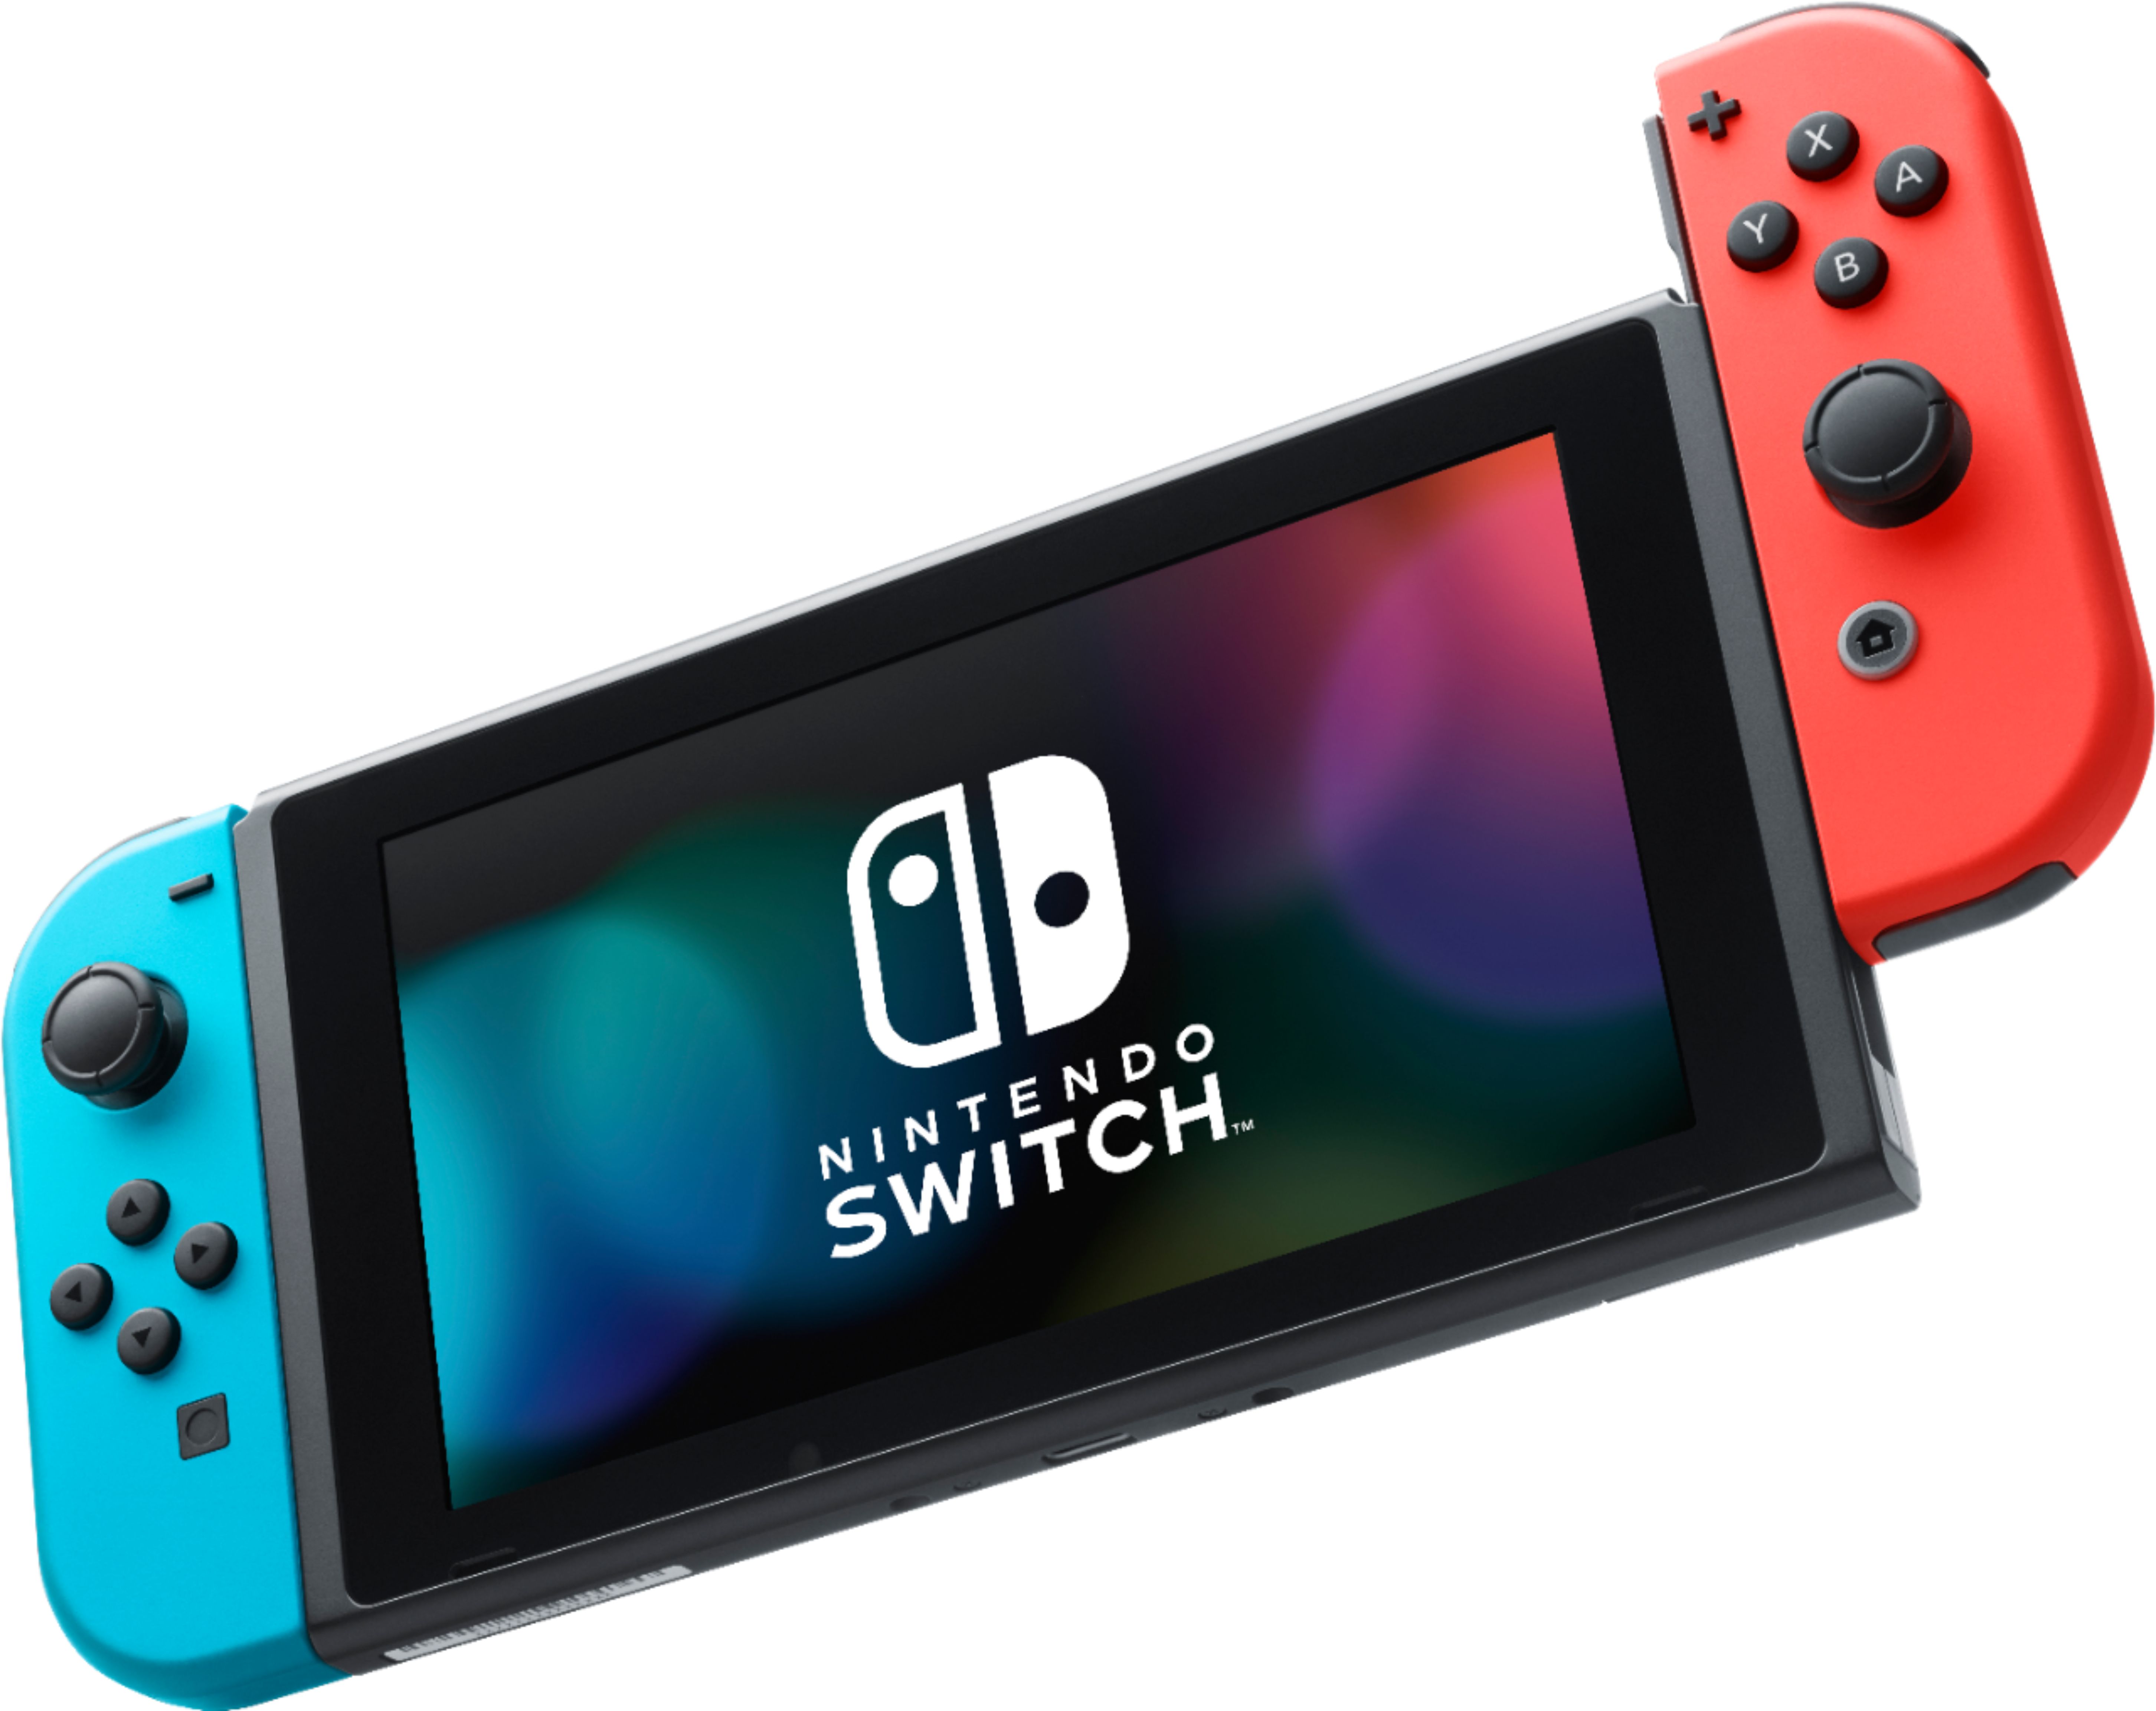 doe niet Dan Eindig Nintendo Switch Neon Blue/Neon Red Joy-Con + Mario Kart 8 Deluxe (Download)  + 3month Nintendo Switch Online membership Black/Neon Blue/Neon Red  HADSKABLD - Best Buy